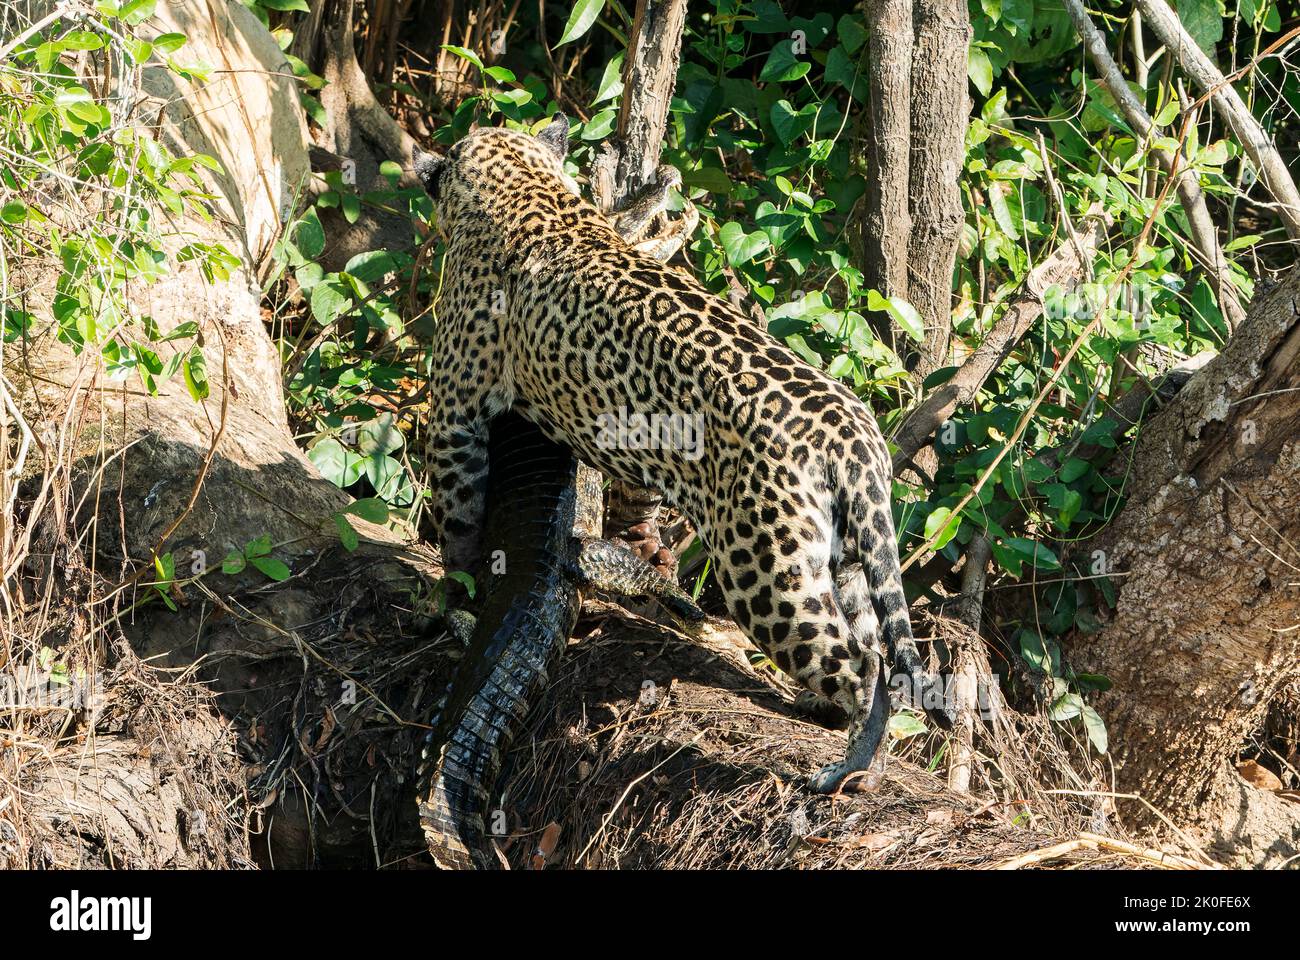 Jaguar, Panthera onca, adult carrying caiman prey, Pantanal, Brazil Stock Photo